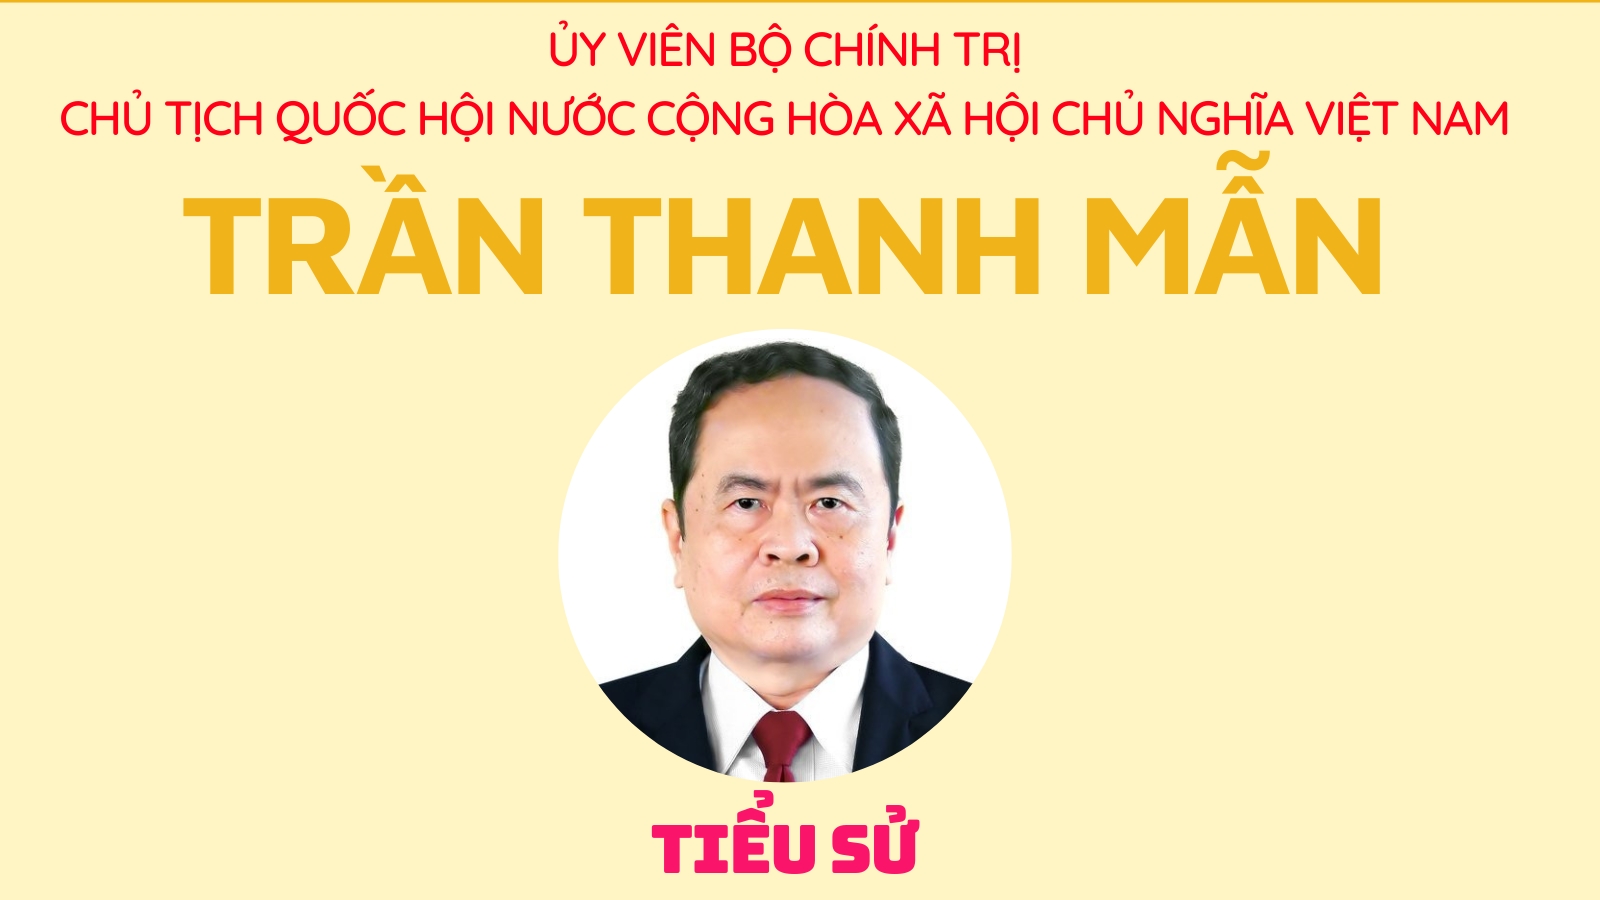 Chủ tịch Quốc hội nước Cộng hòa xã hội chủ nghĩa Việt Nam - Trần Thanh Mẫn